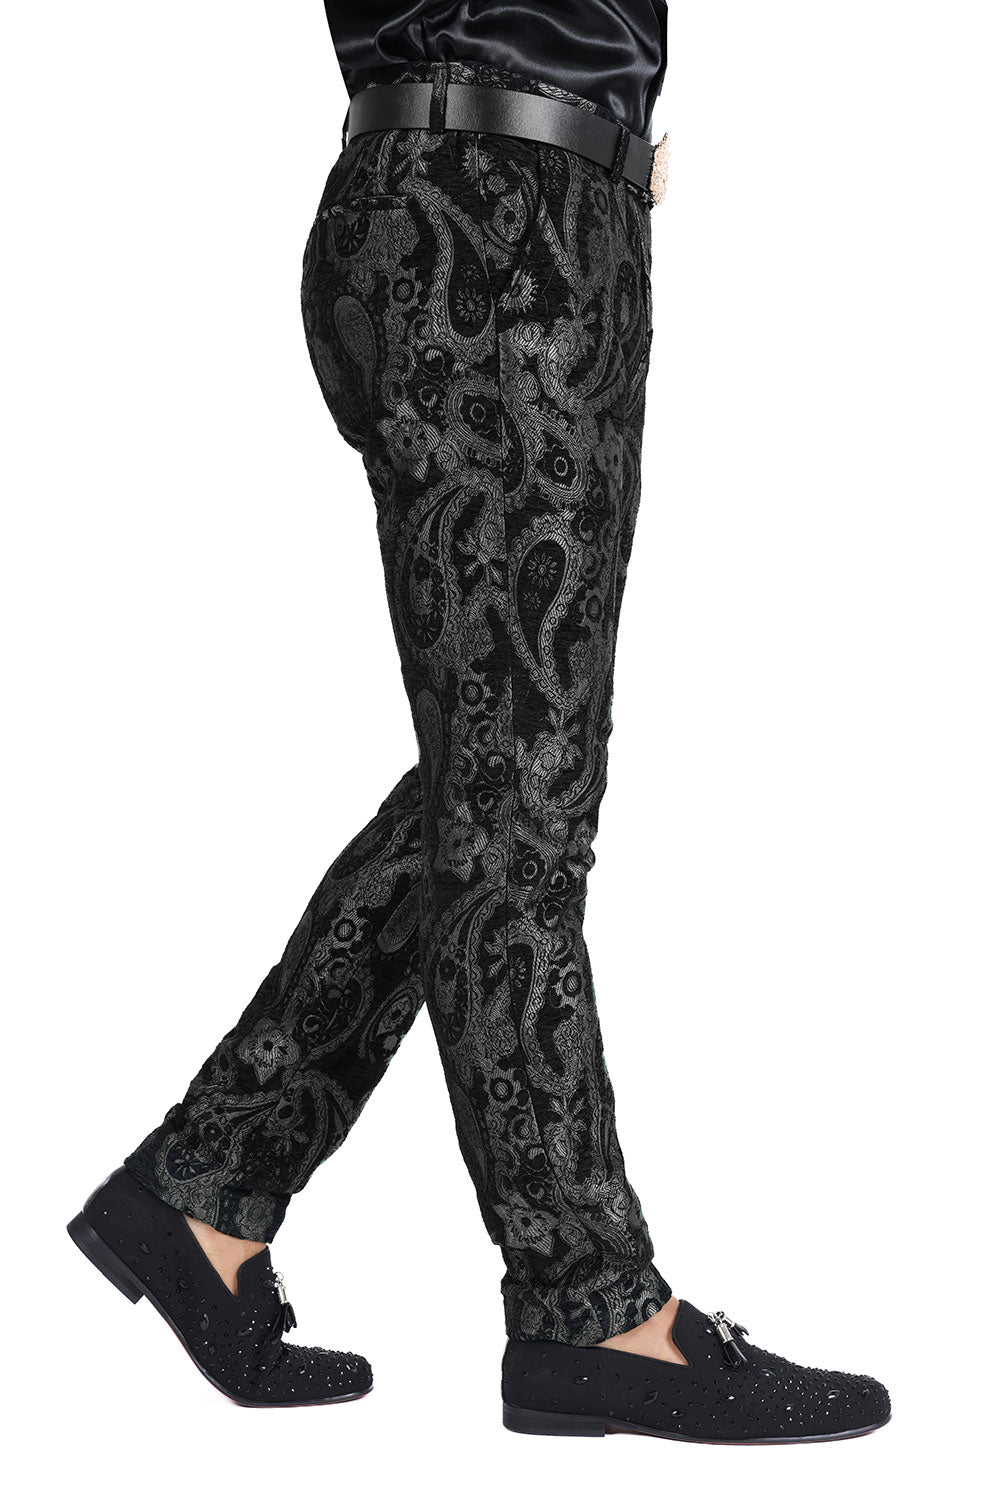 Barabas Men's Paisley Floral Print Design Luxury Pants 2CP3101 Black 